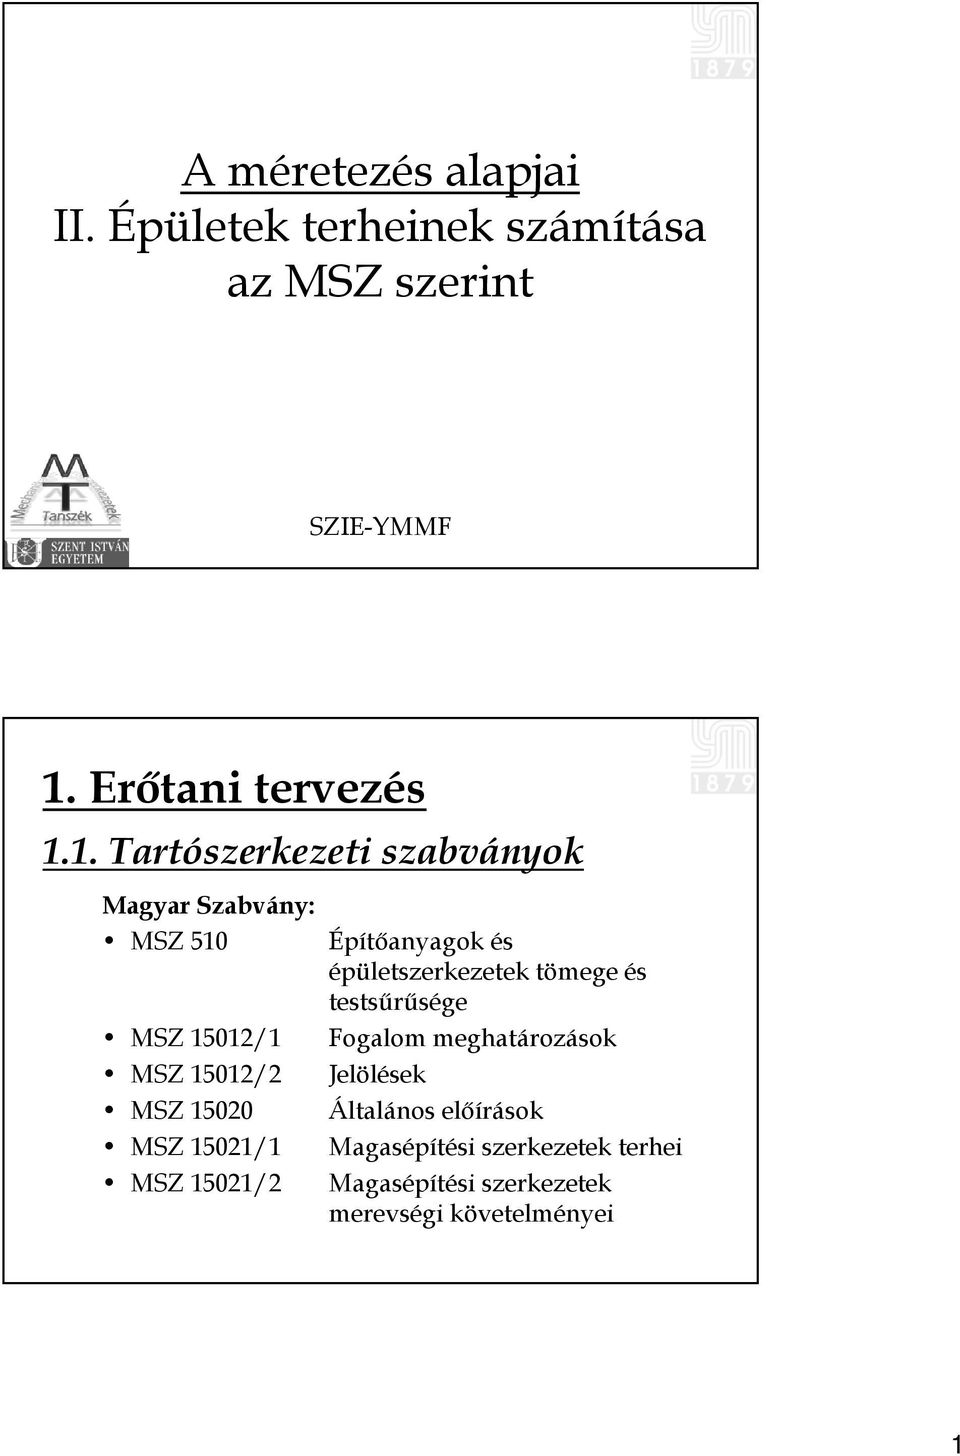 1. Tartószerkezeti szabványok Magyar Szabvány: MSZ 510 MSZ 15012/1 MSZ 15012/2 MSZ 15020 MSZ 15021/1